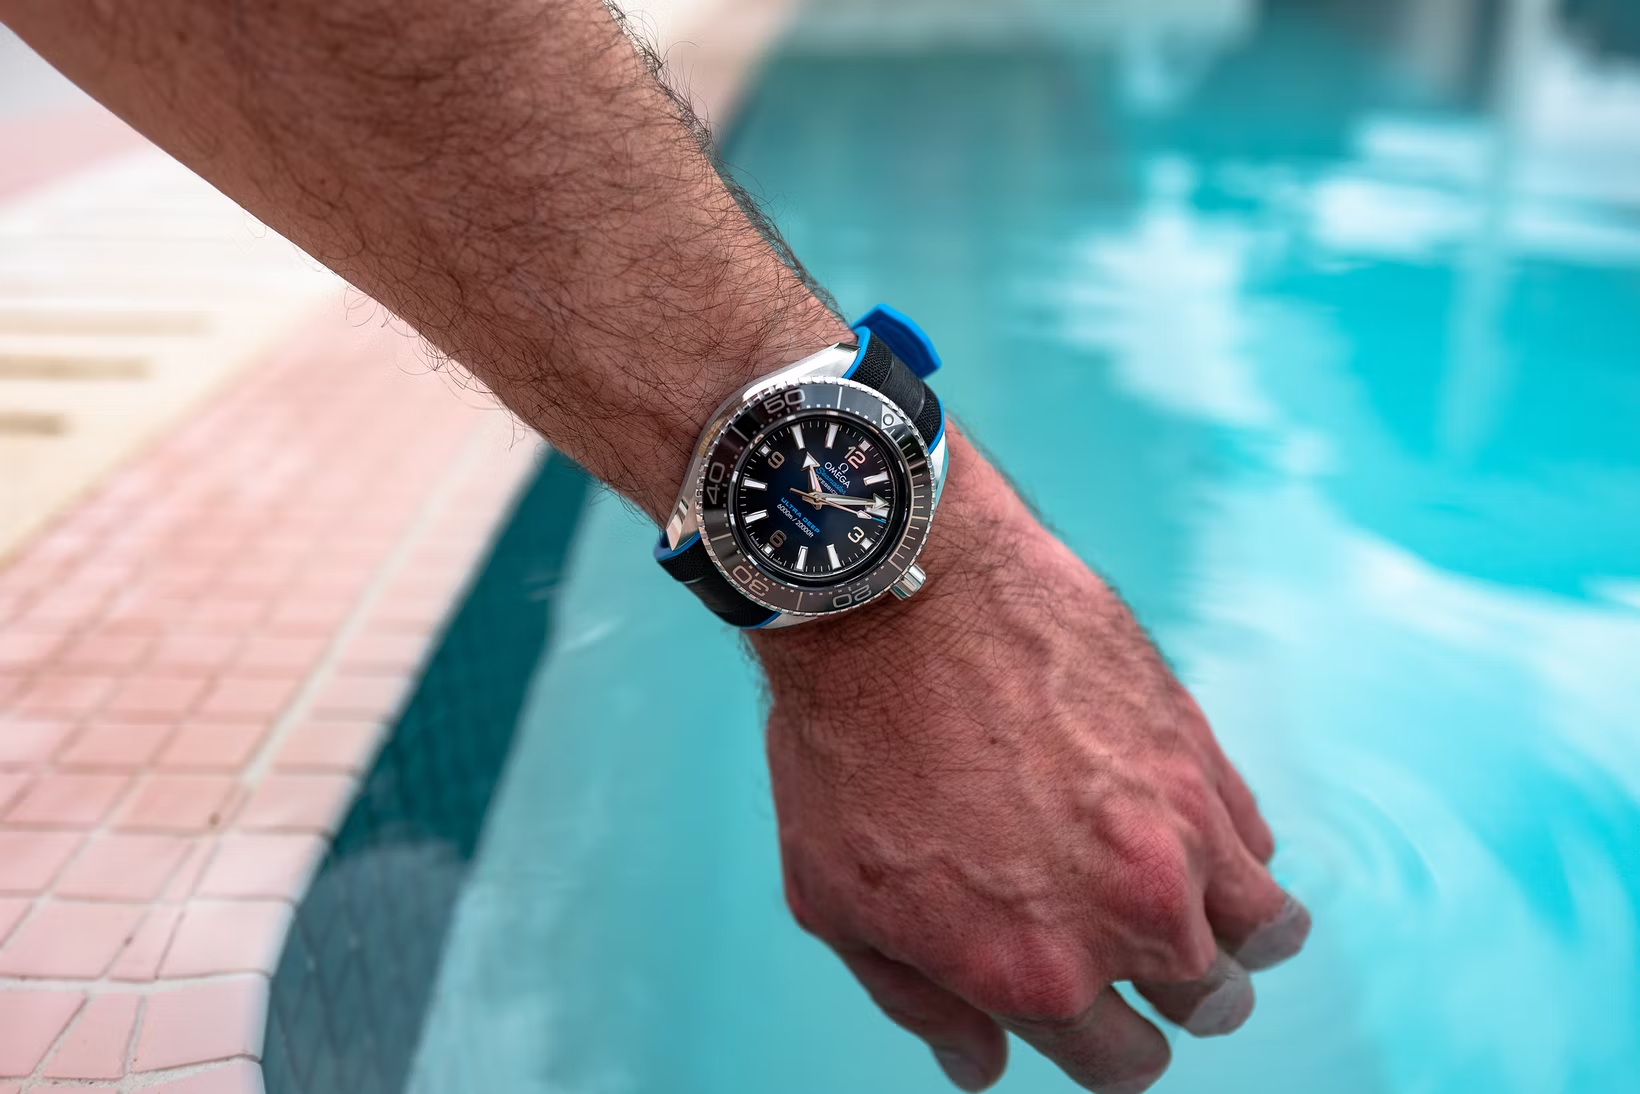 HONHX 腕時計 デジタル腕時計 ダイバーズウォッチ 3気圧防水